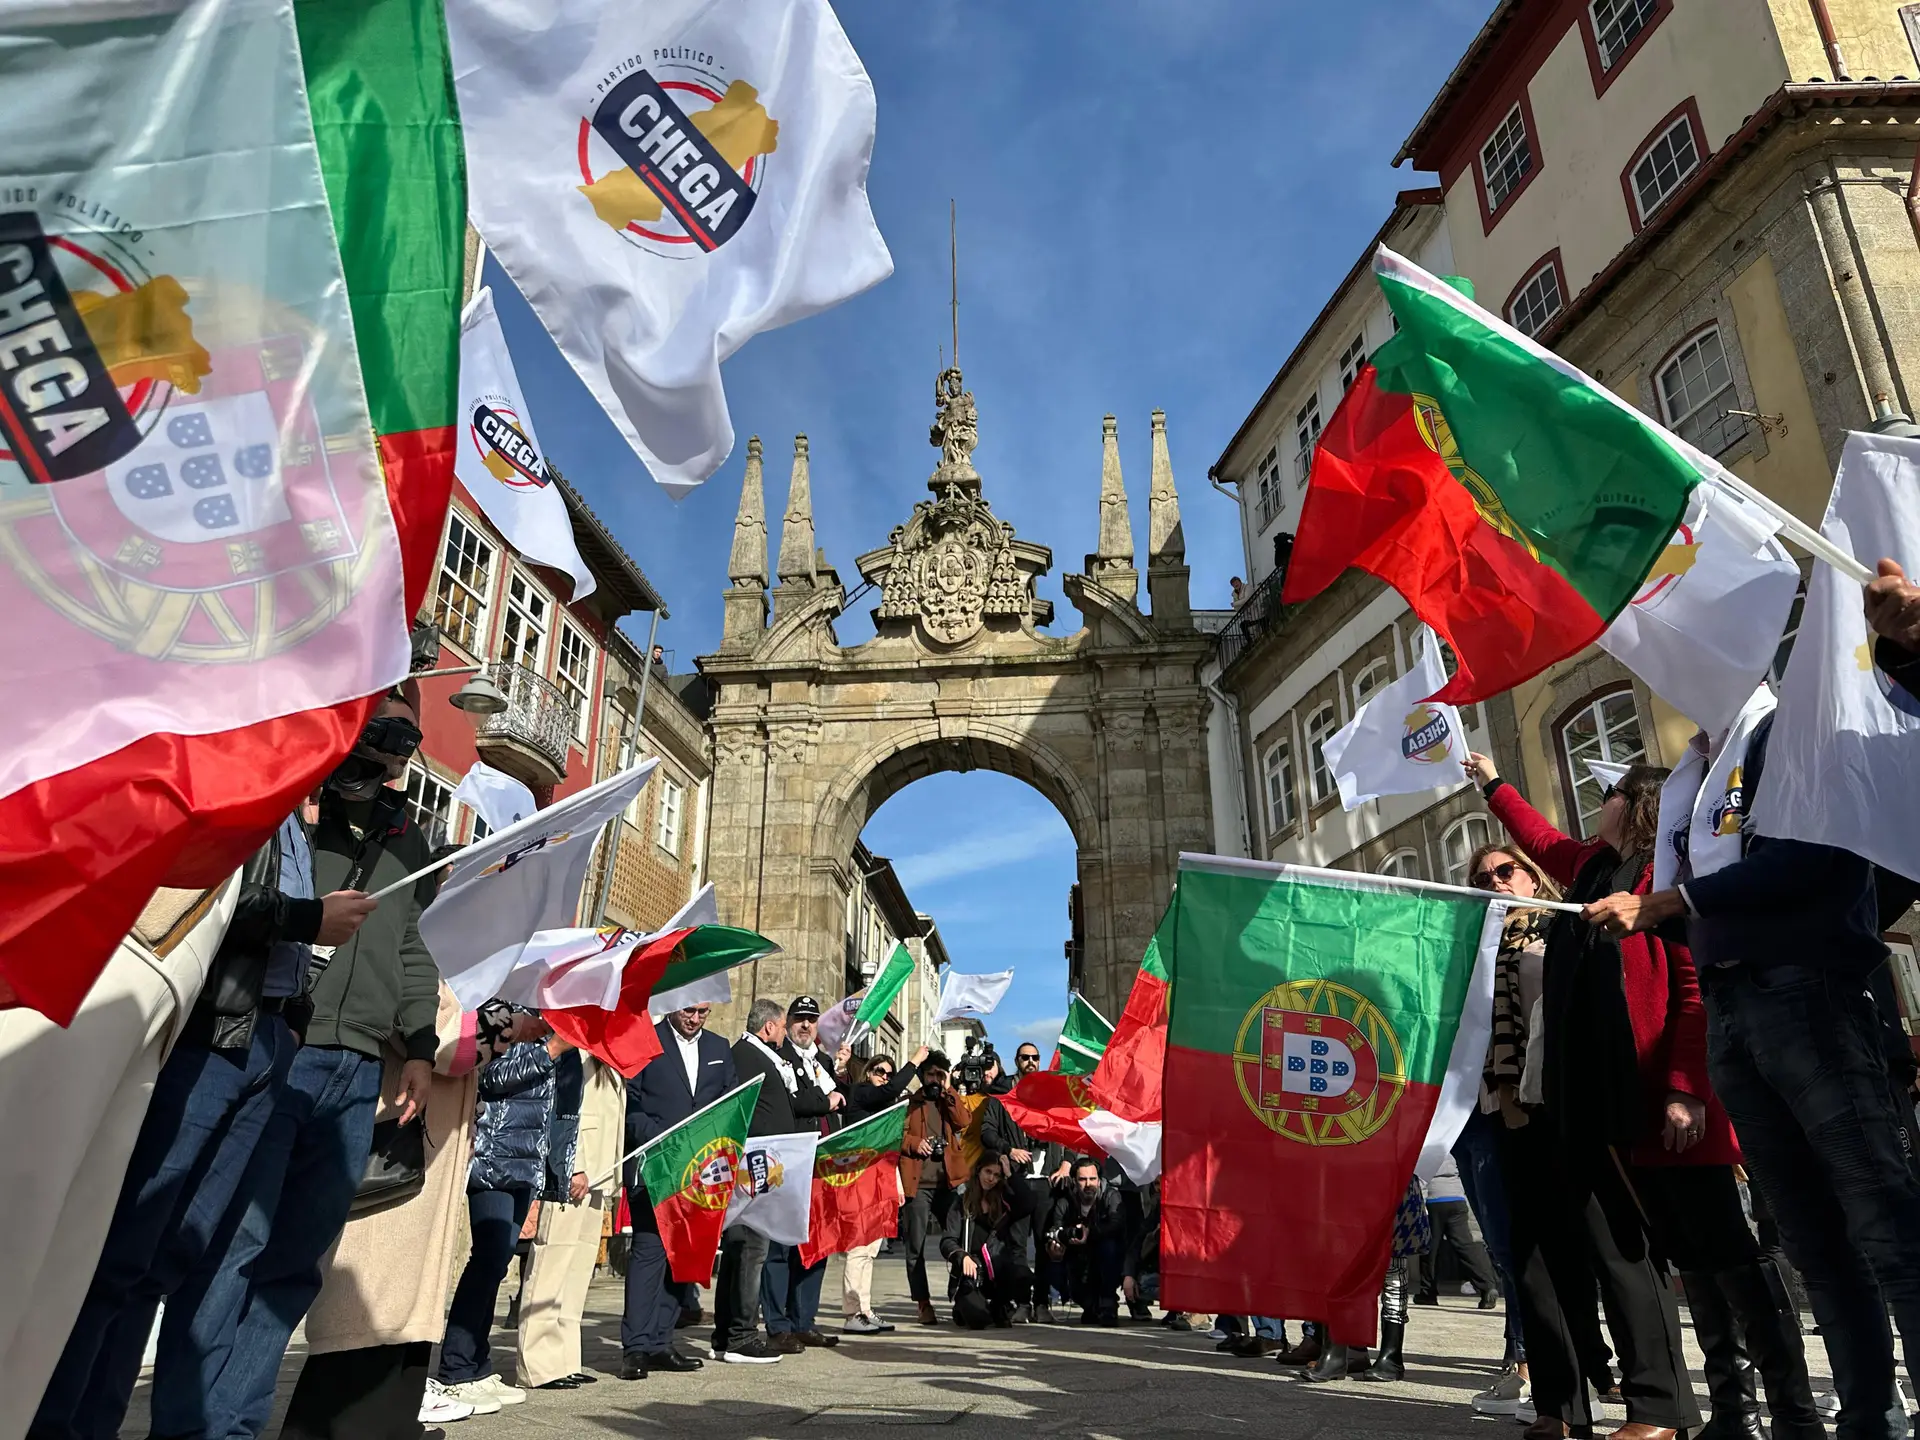 Sondagem: 35% dos simpatizantes do Chega dizem que Portugal está pior do que na ditadura